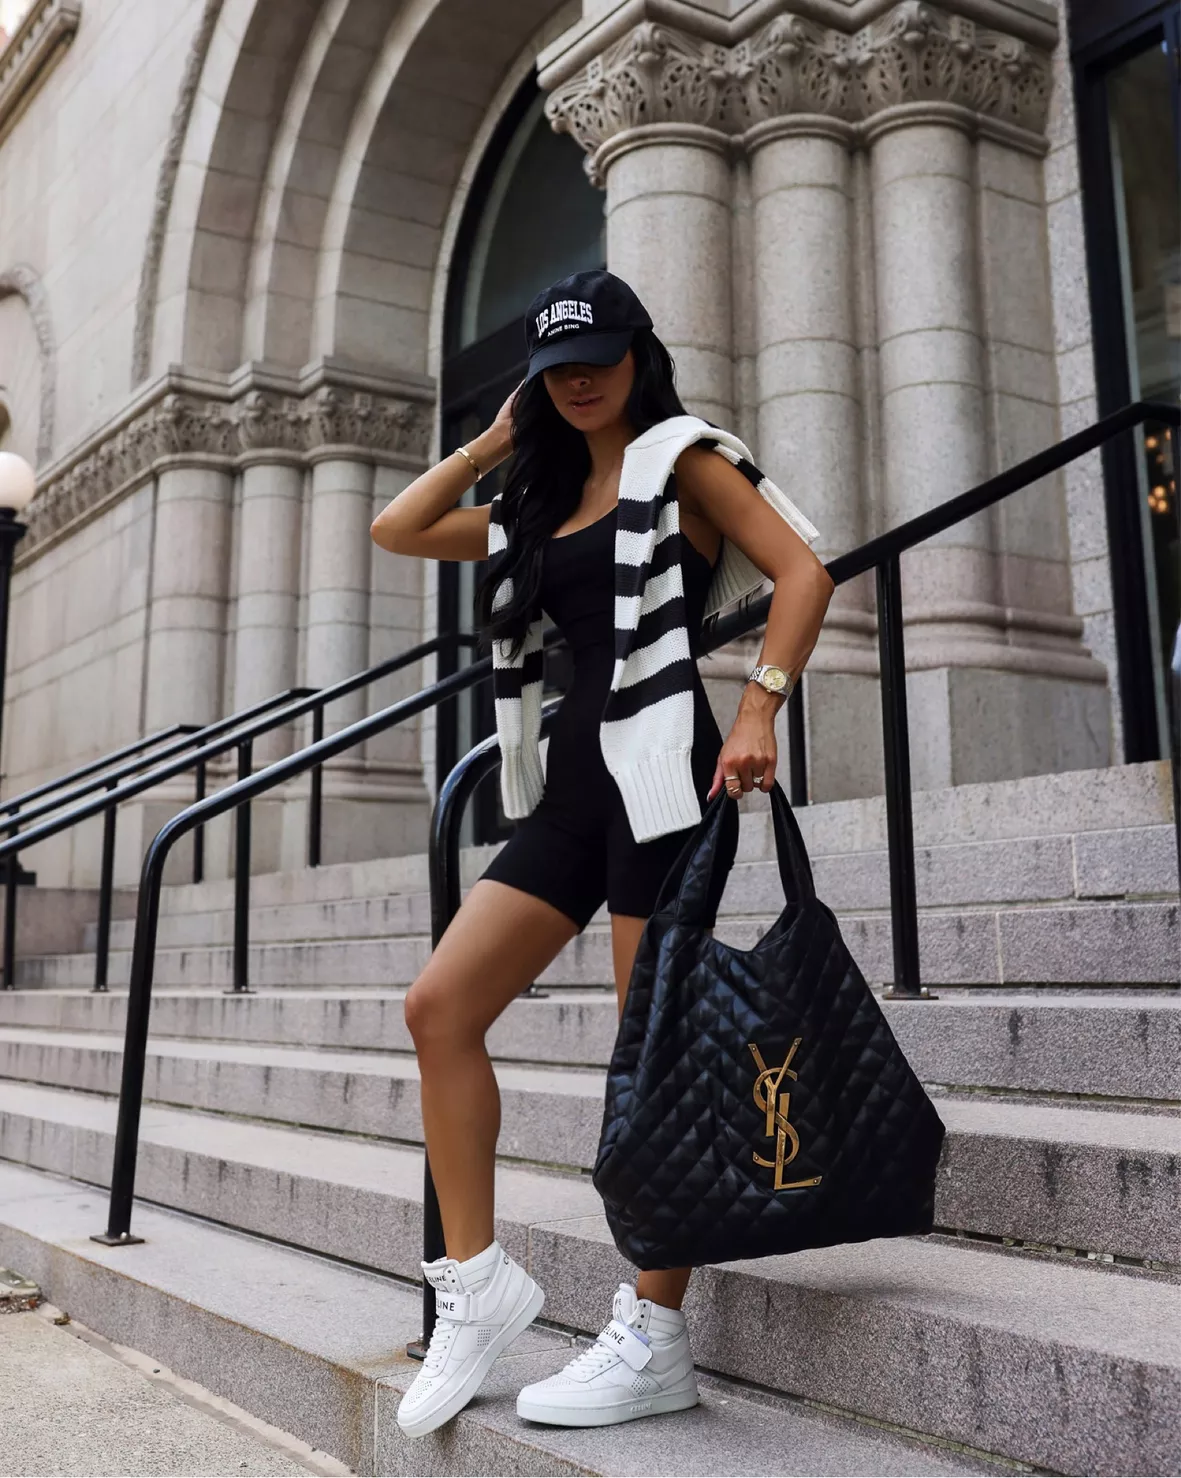 YSL Lou camera bag, bodysuit, neutral outfit, felt hat #LTKitbag  #LTKstyletip #LTKunder100